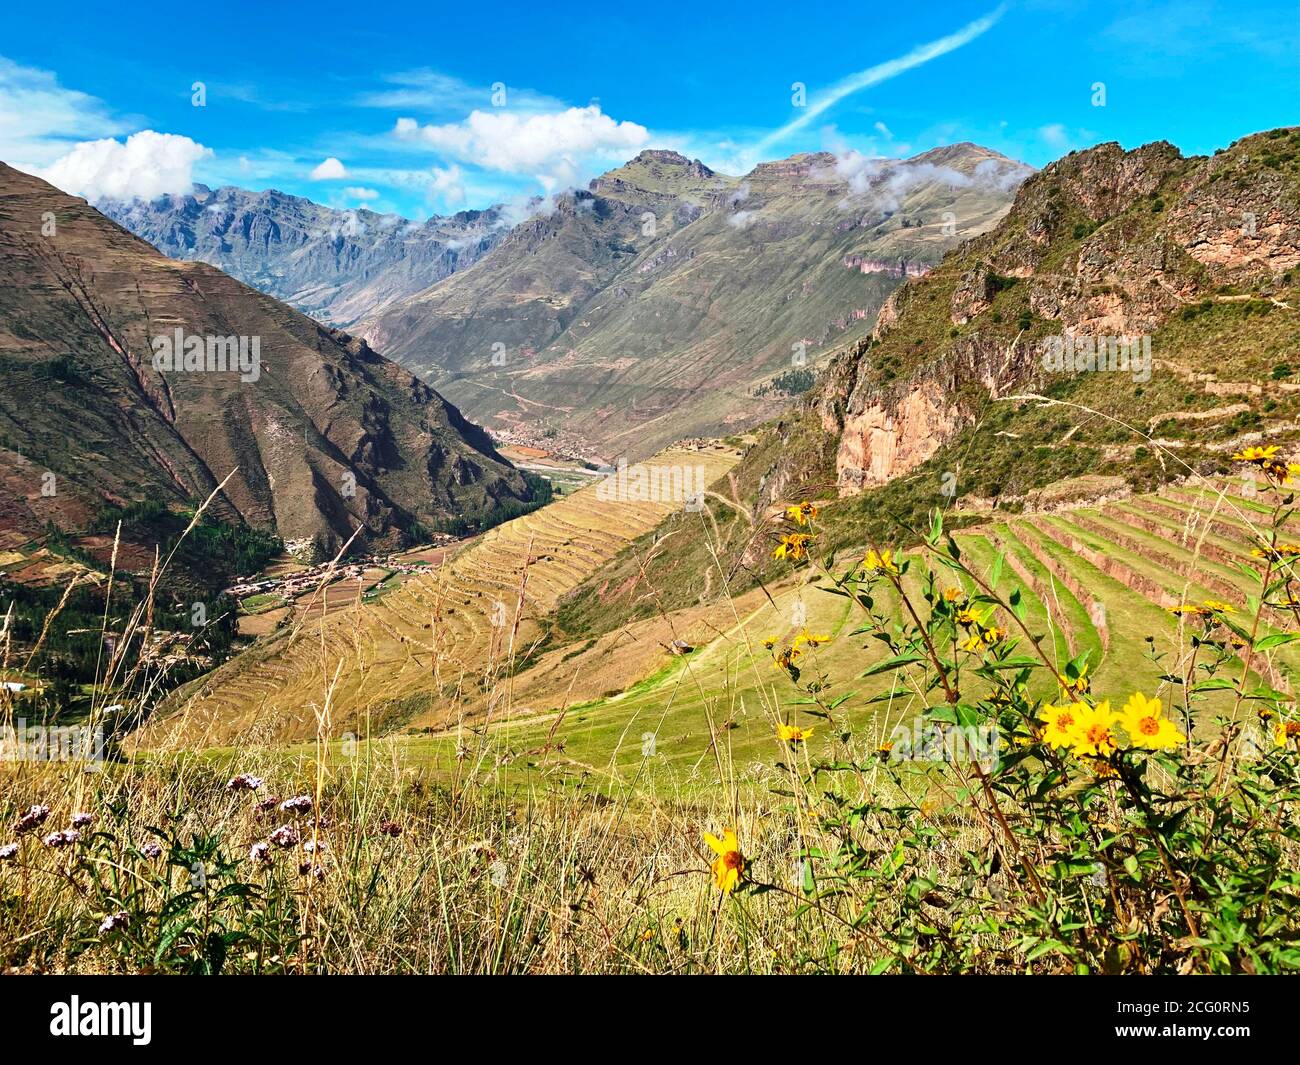 Magnifique nature péruvienne. Vallée sacrée des incas. Été dans la vallée d'Urubamba. Paysage de montagne incroyable des Andes. Terrasse pittoresque en herbe verte d'Andenes Banque D'Images